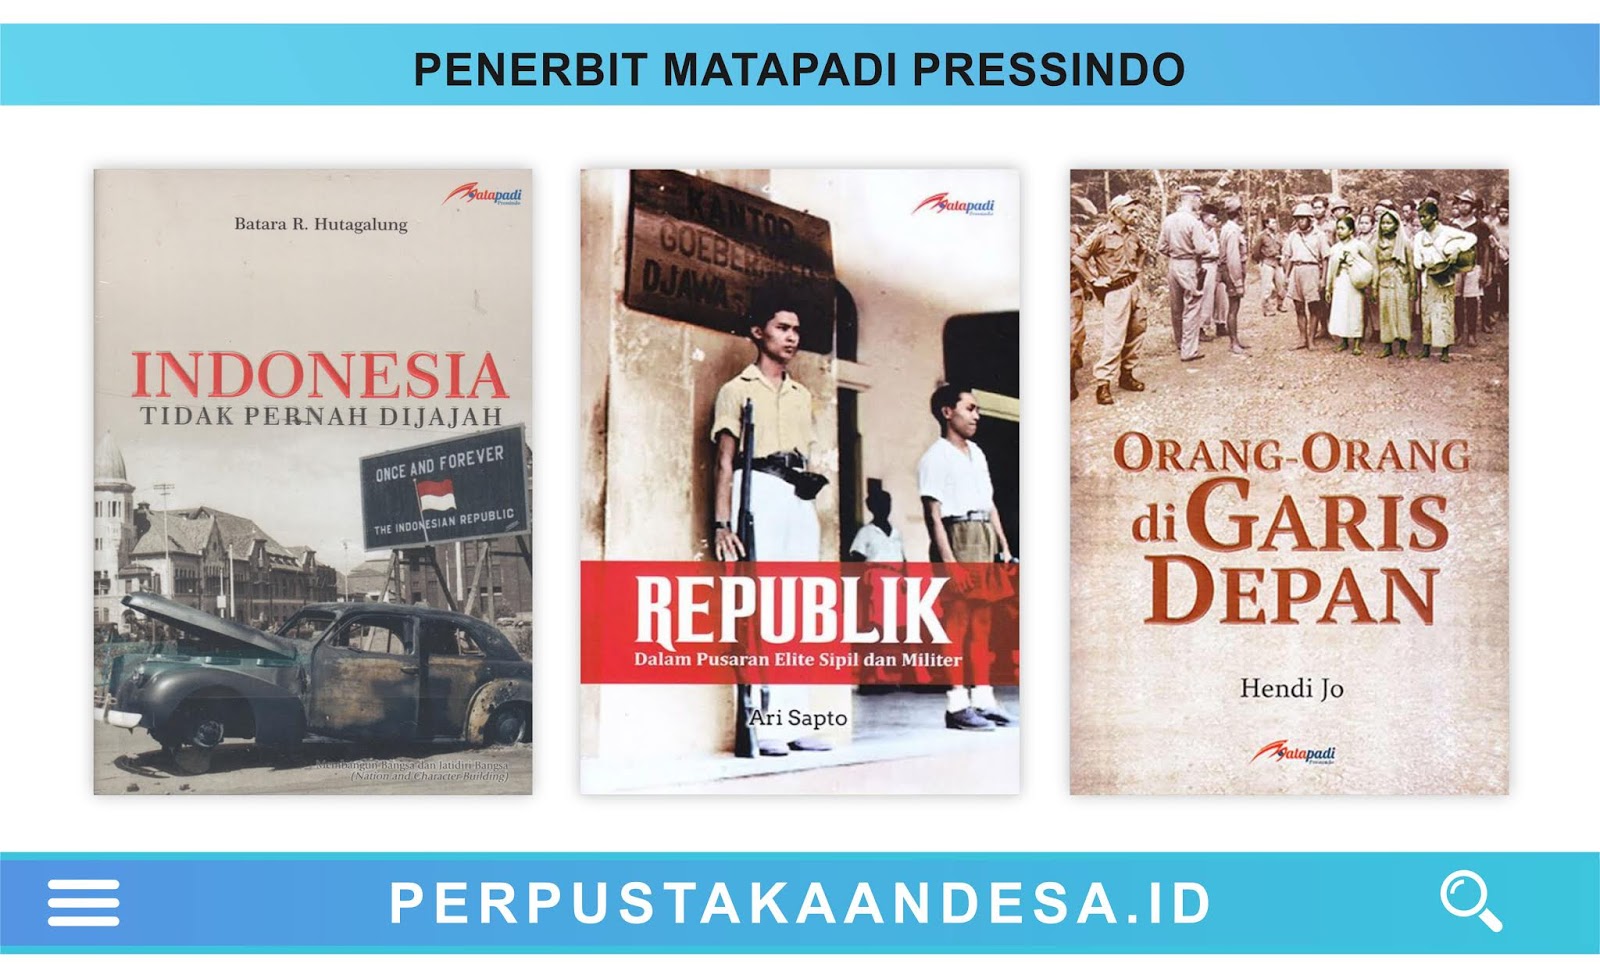 Daftar Judul Buku Buku Penerbit Matapadi Pressindo Perpustakaan Desa